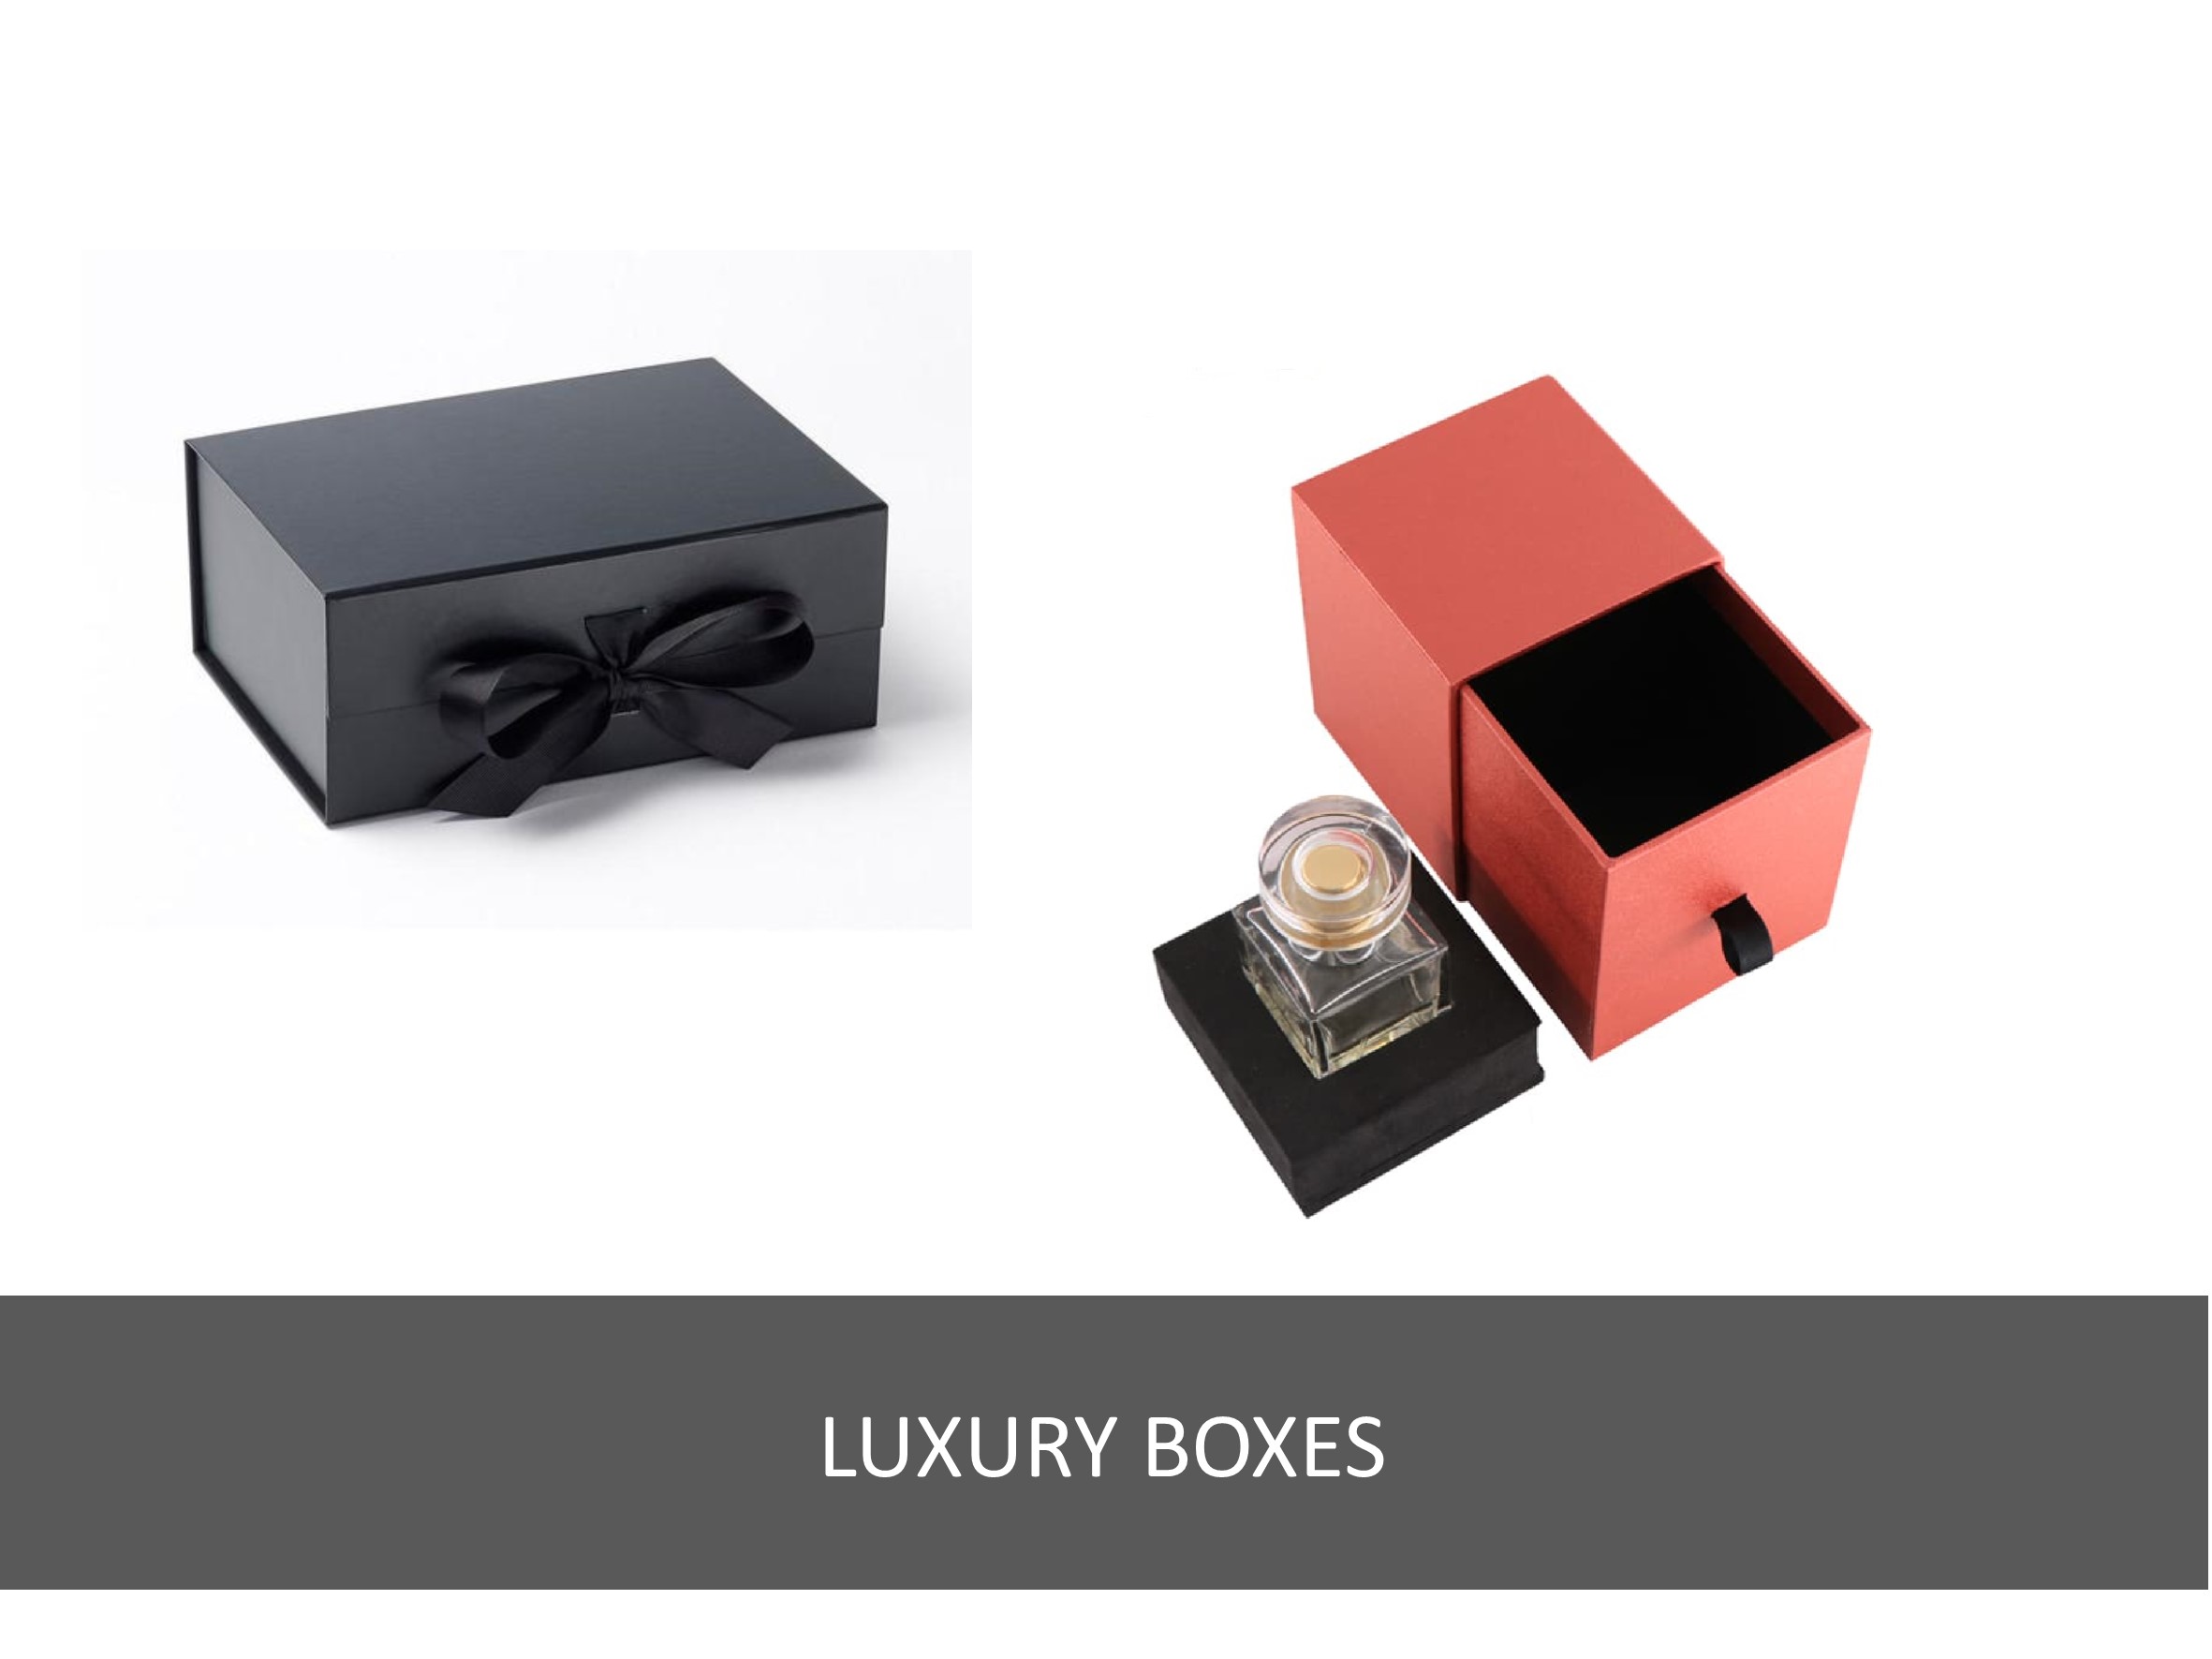 Luxury boxes